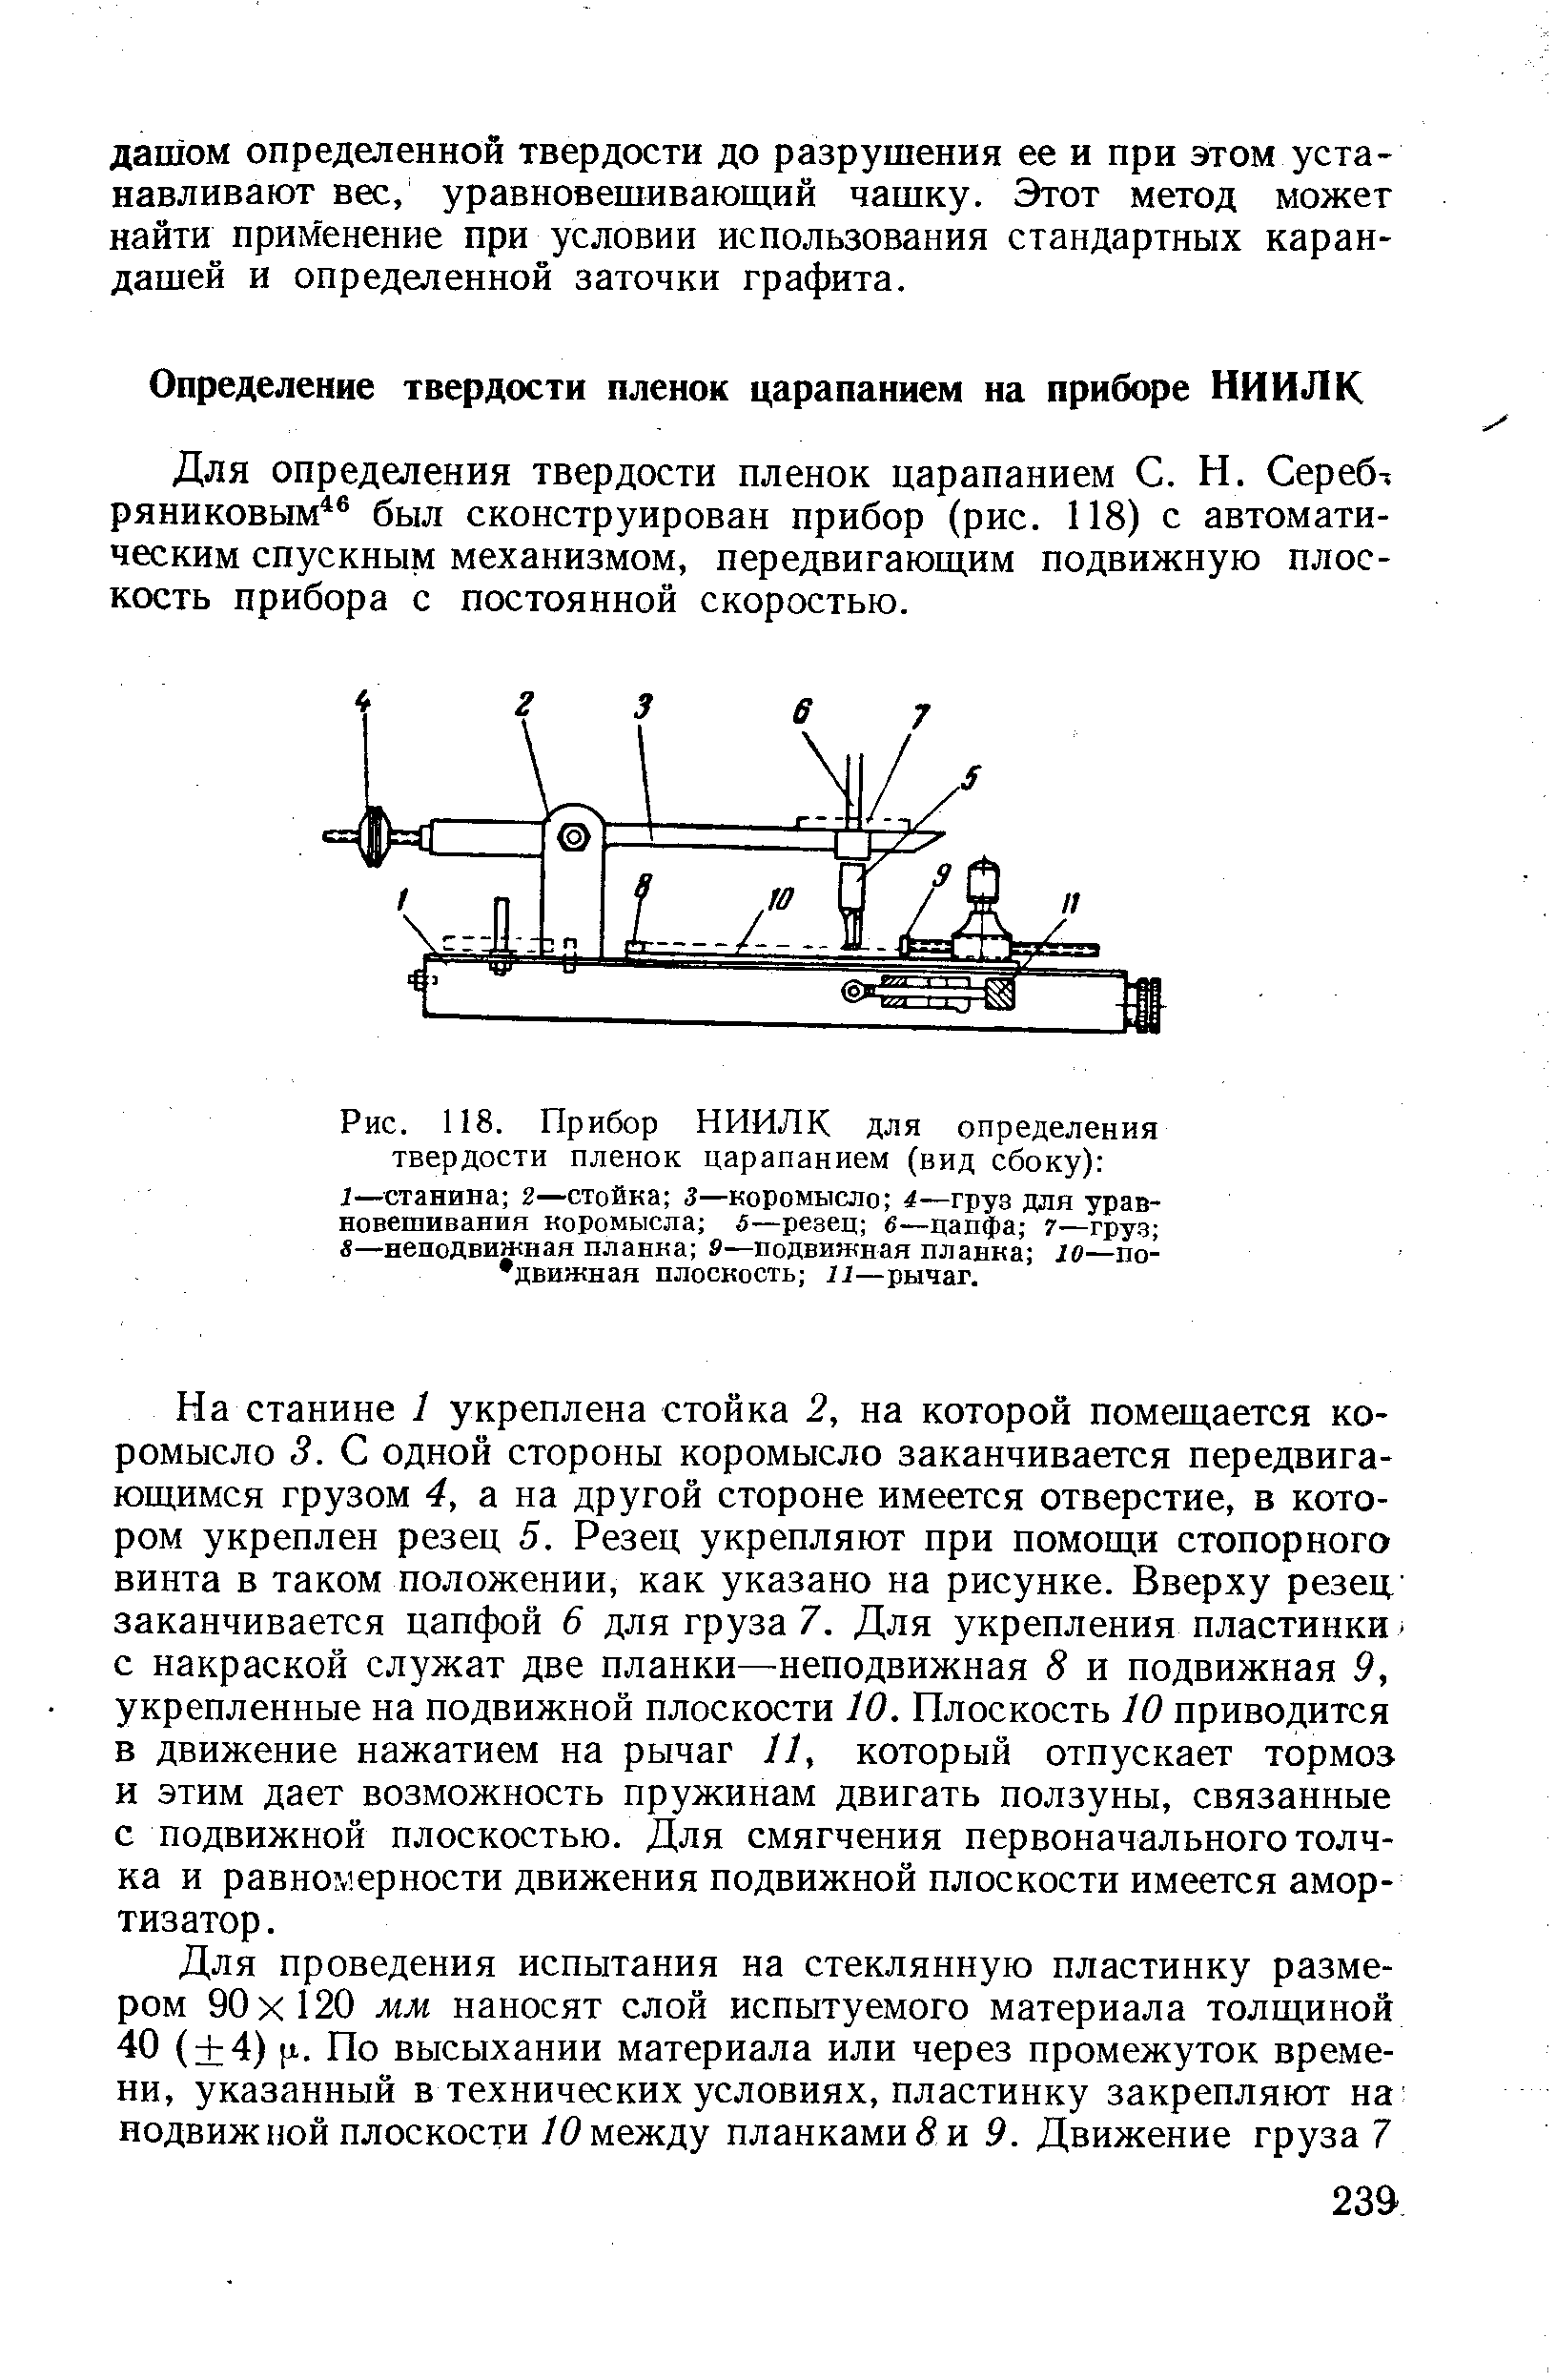 Для определения твердости пленок царапанием С. Н. Сереб-ряниковым был сконструирован прибор (рис. 118) с автоматическим спускным механизмом, передвигающим подвижную плоскость прибора с постоянной скоростью.
